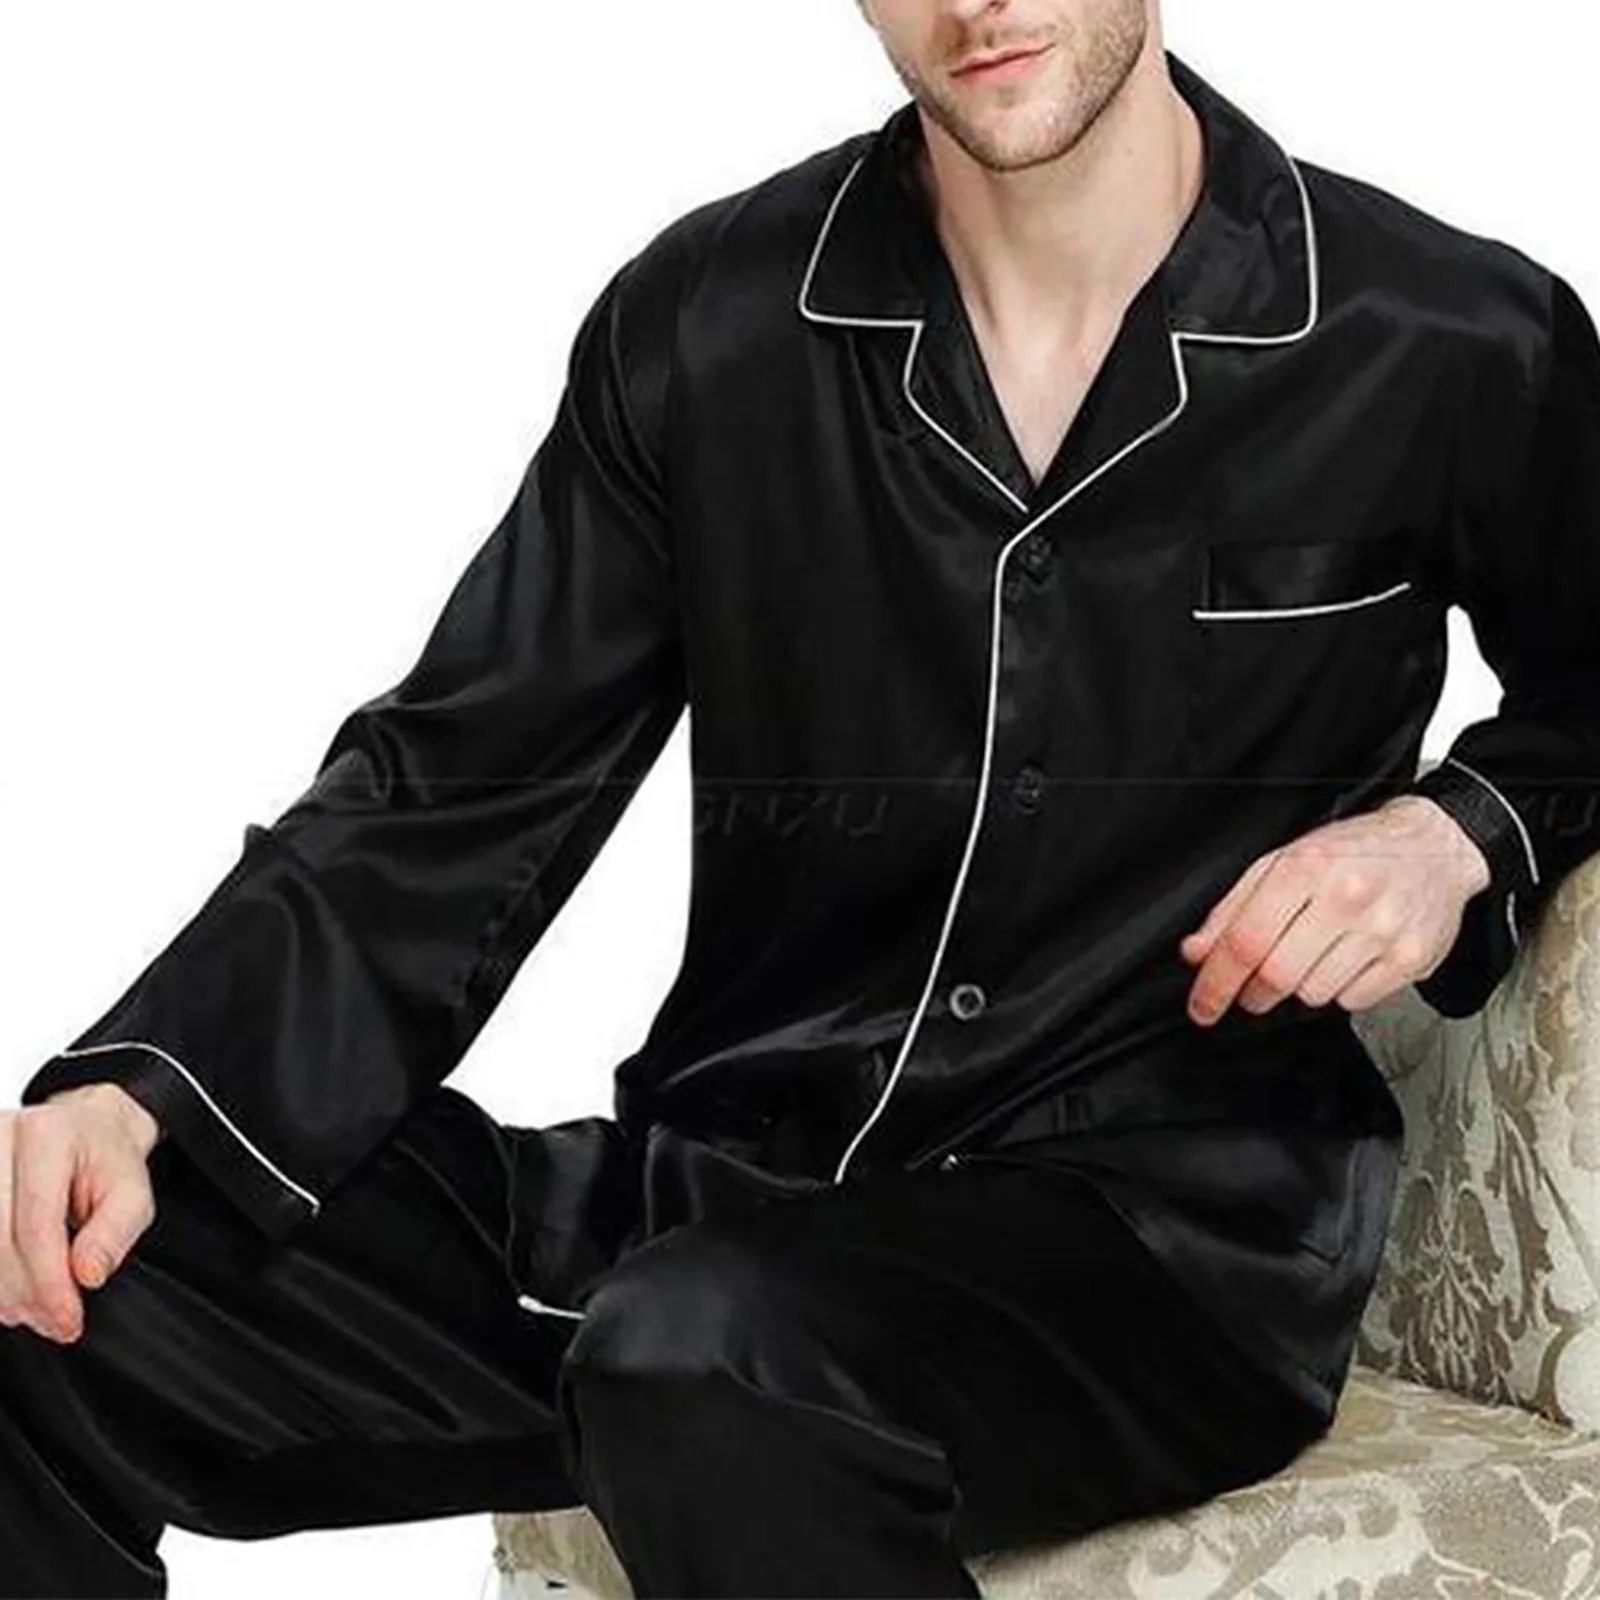 Мужская шелковая ночная рубашка с отложным воротником, Топ с длинным рукавом и длинные брюки, пижамный комплект, одежда для сна для весны и о... от AliExpress RU&CIS NEW